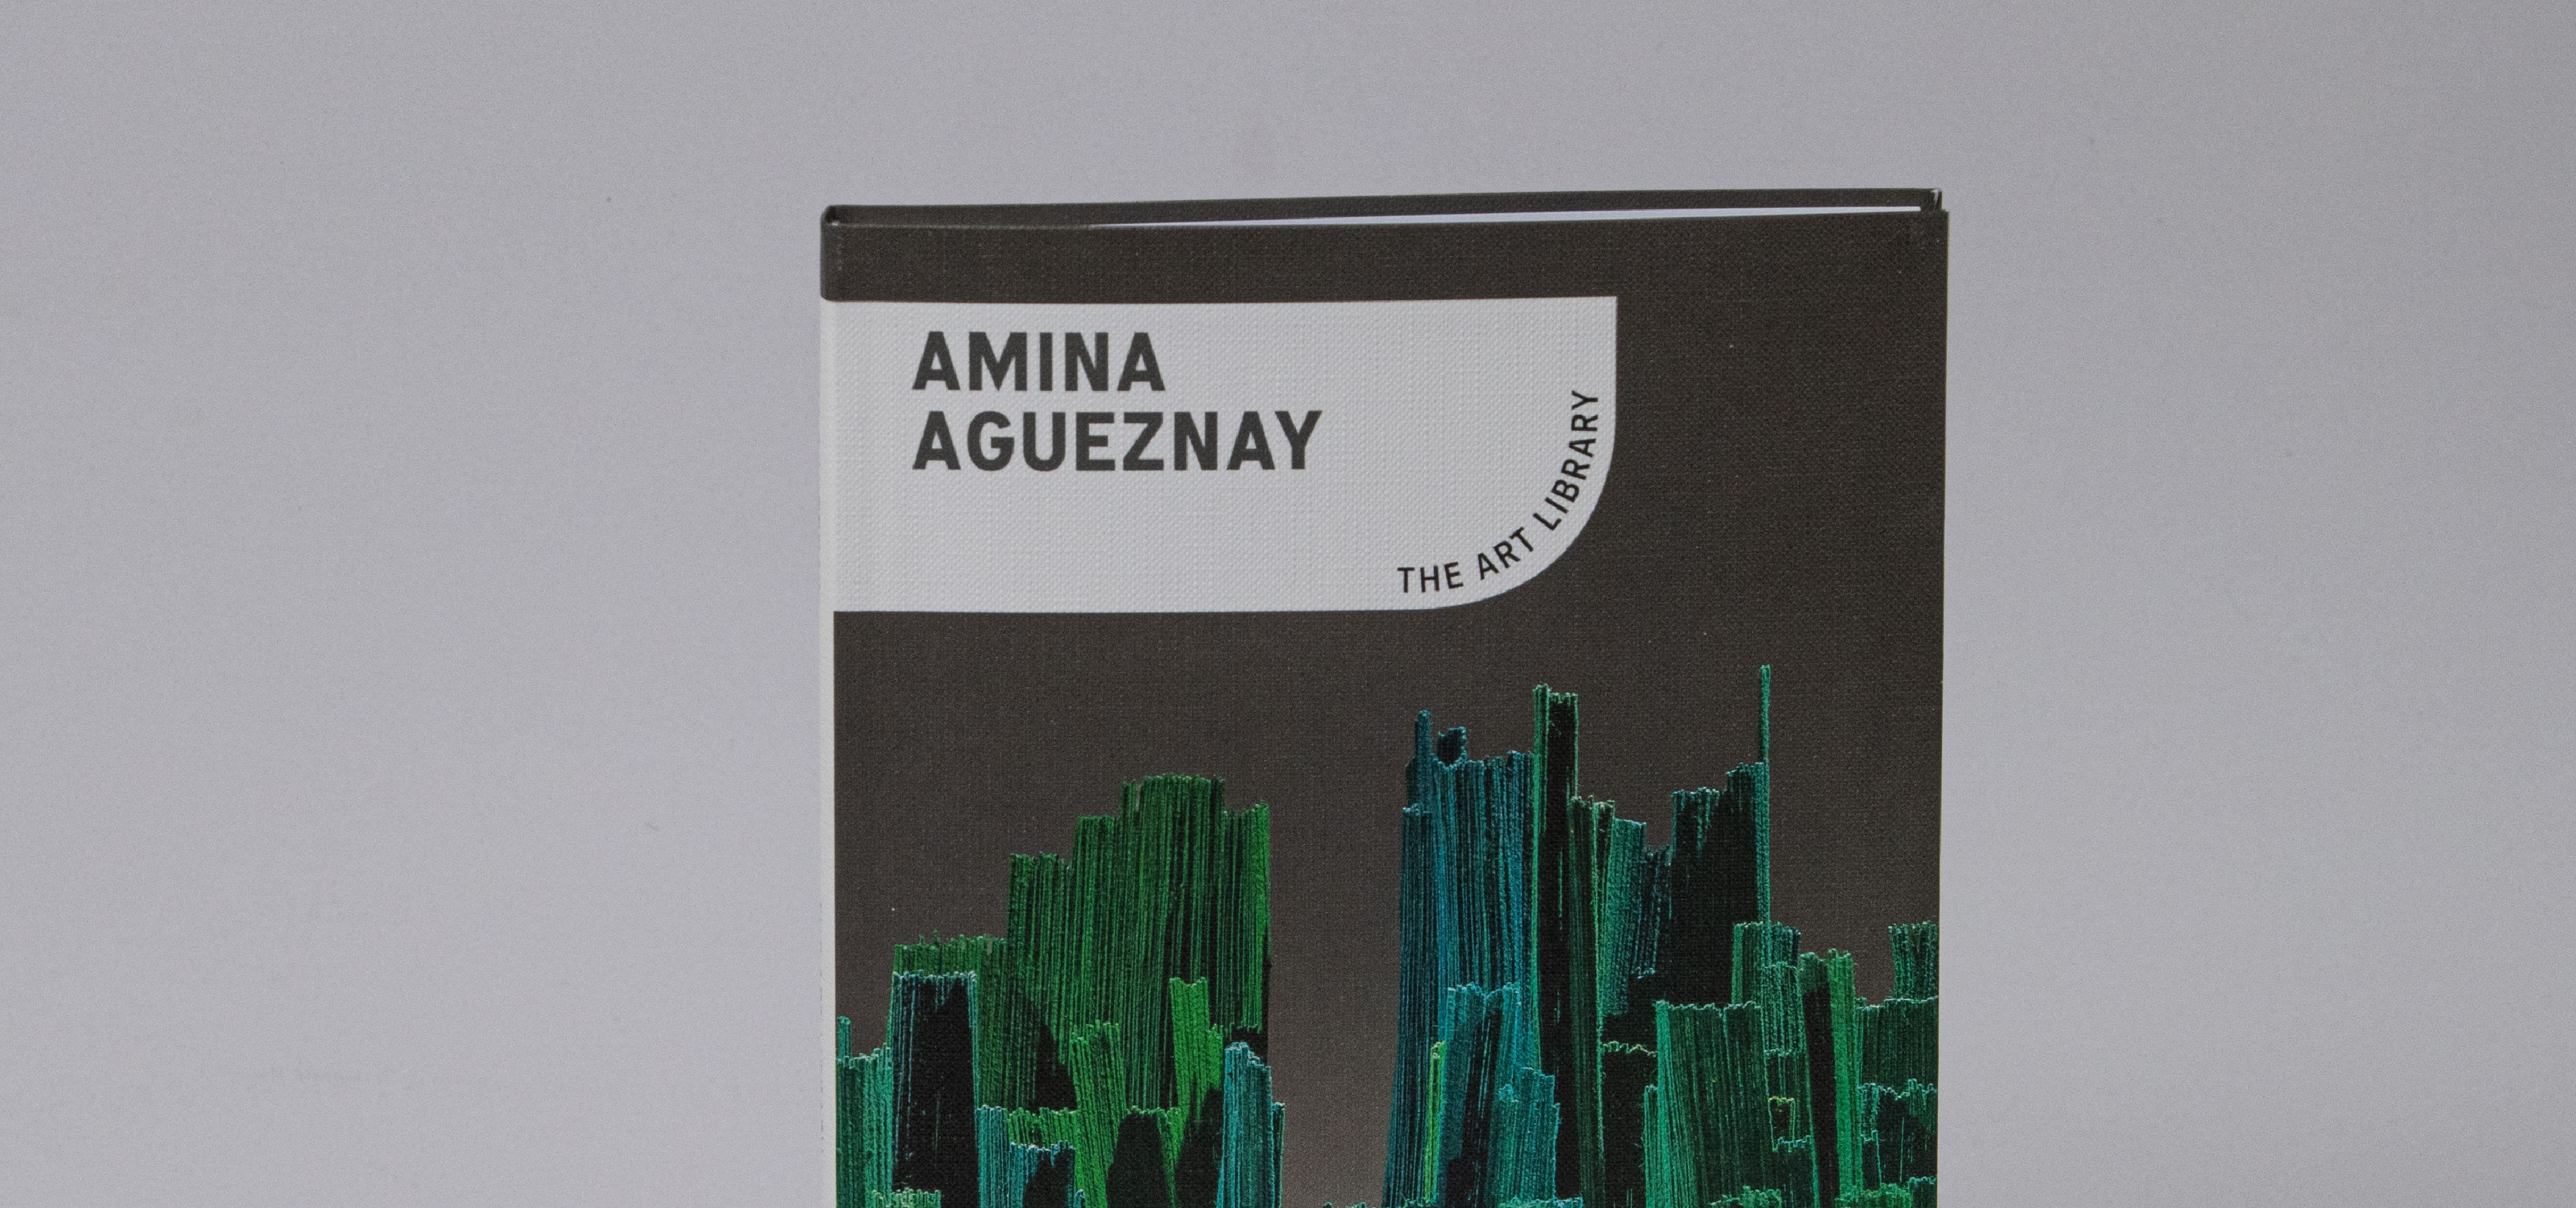 Amina Agueznay